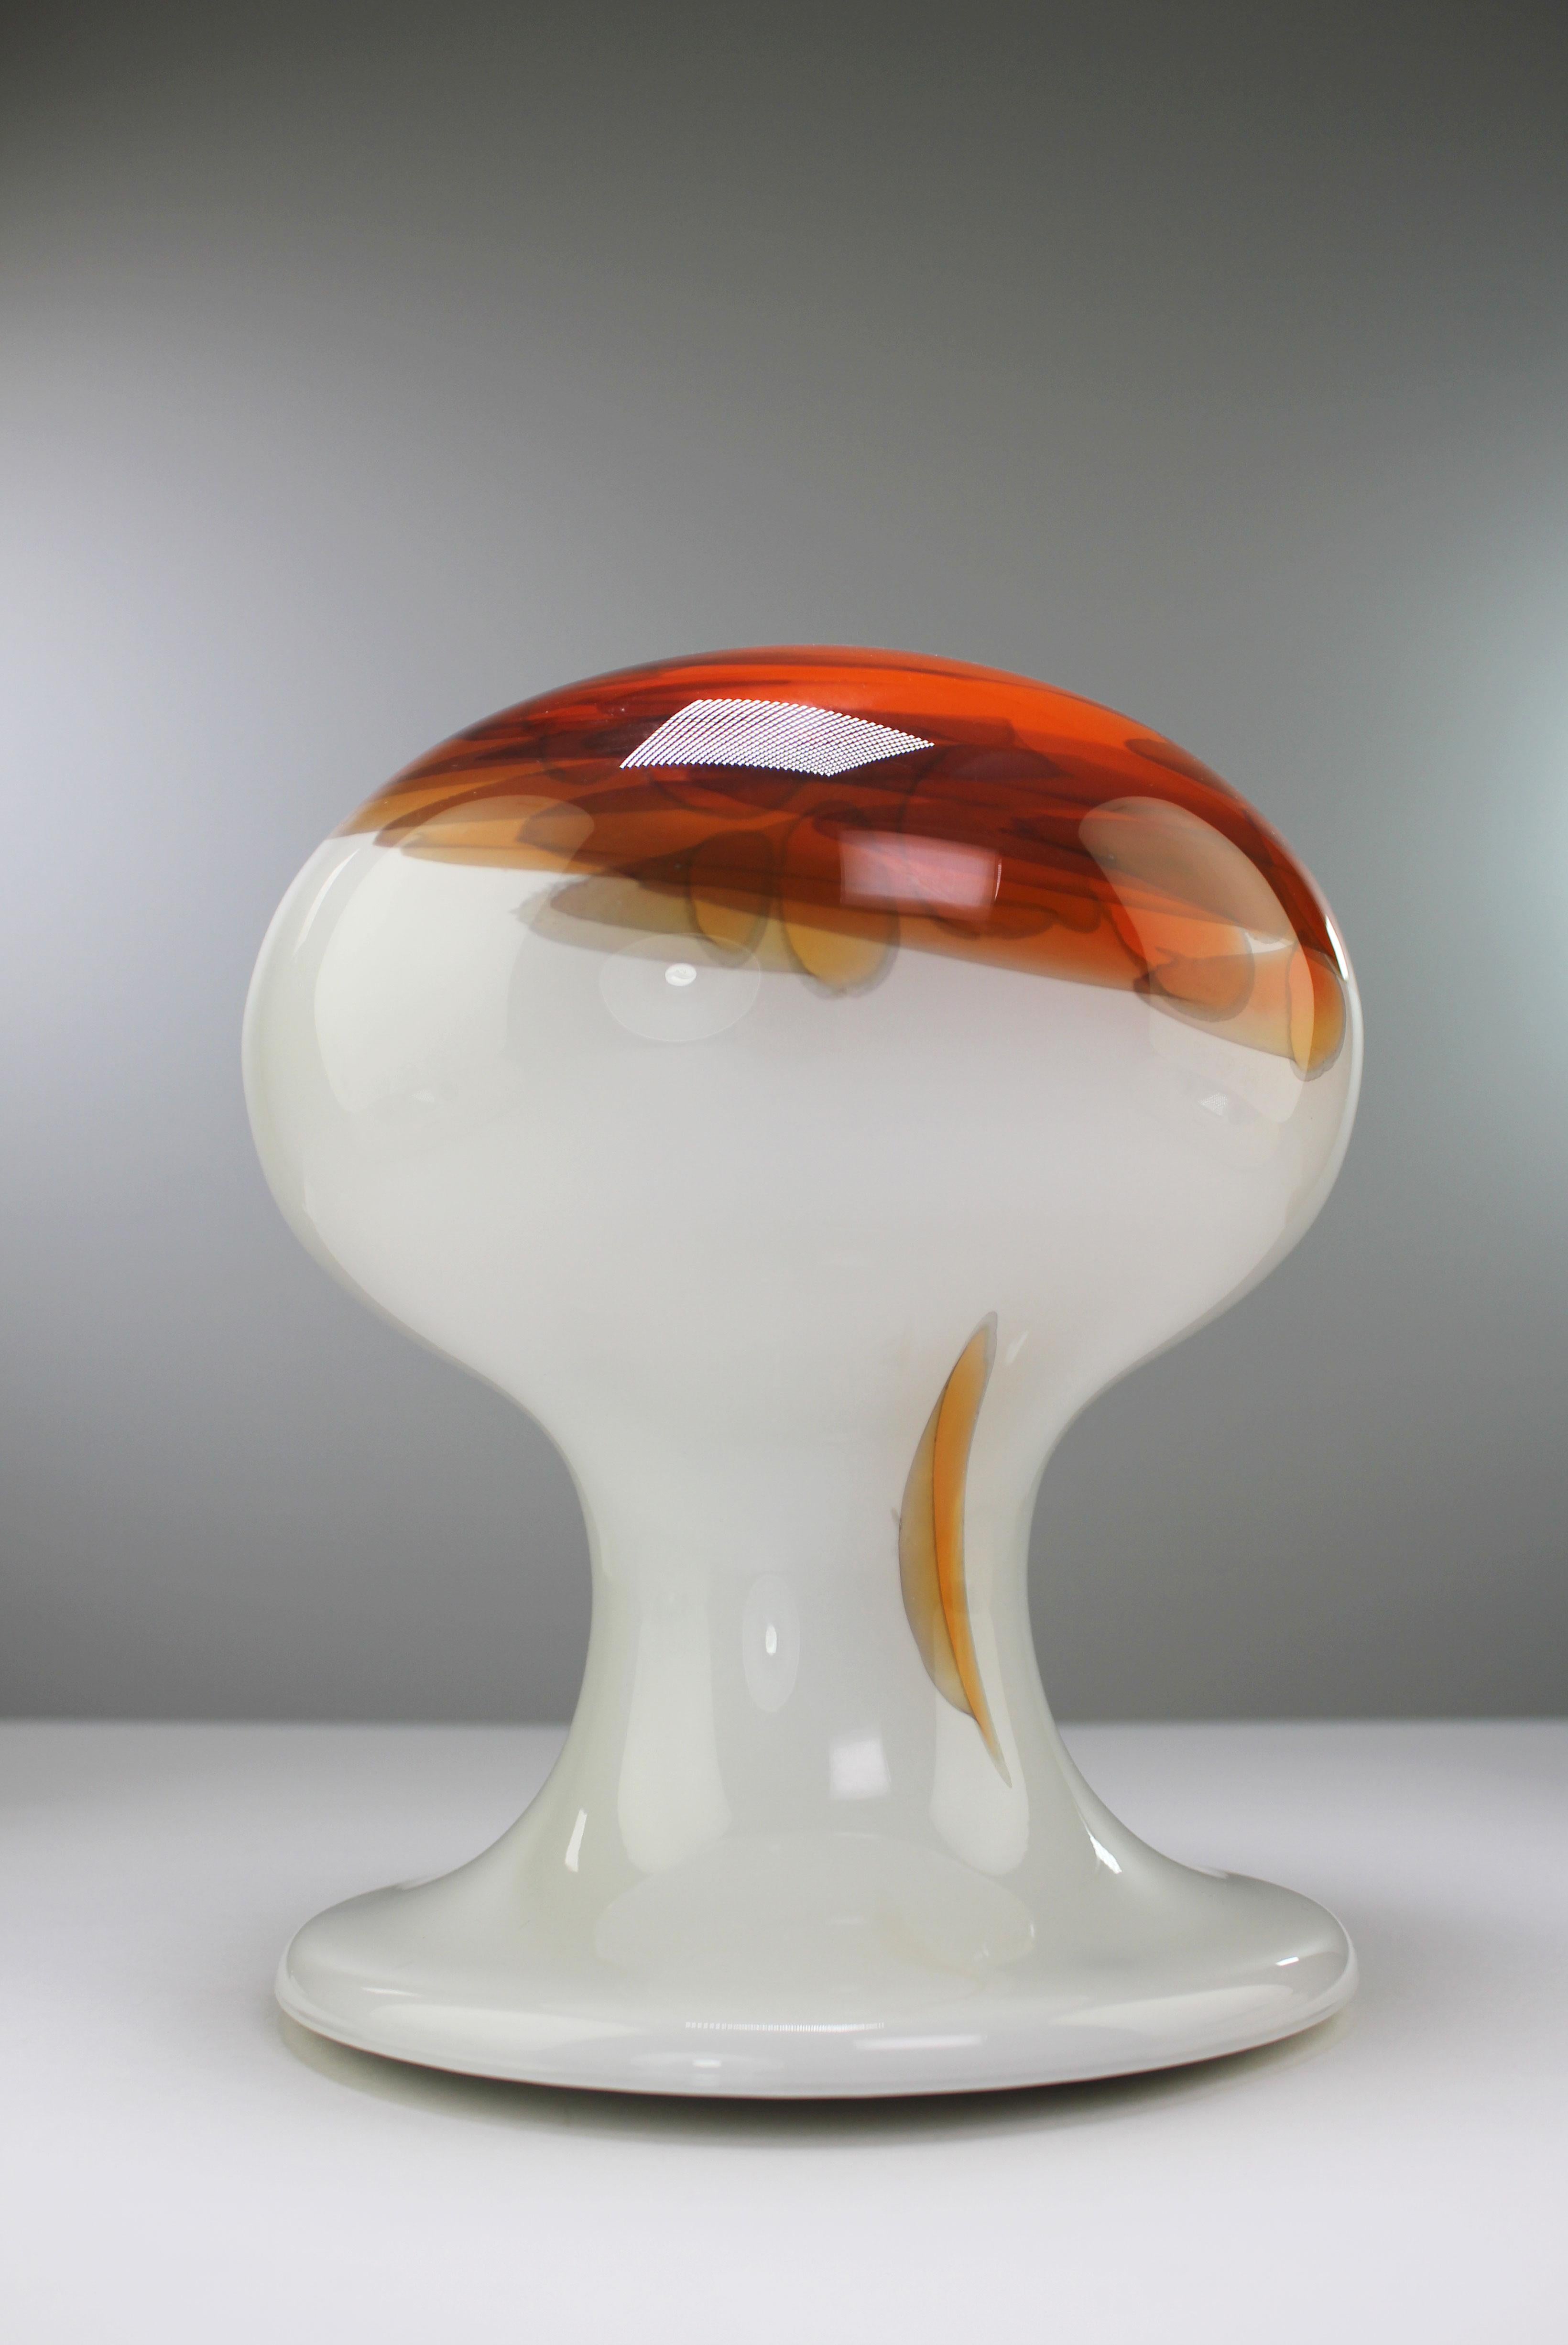 Lampe de table unique en verre d'art soufflé du milieu du siècle, en forme de champignon, avec des décorations organiques, par le designer danois Per Lütken. Verre blanc osseux opalin avec des accents de couleur orange, rouge et jaune ardent.